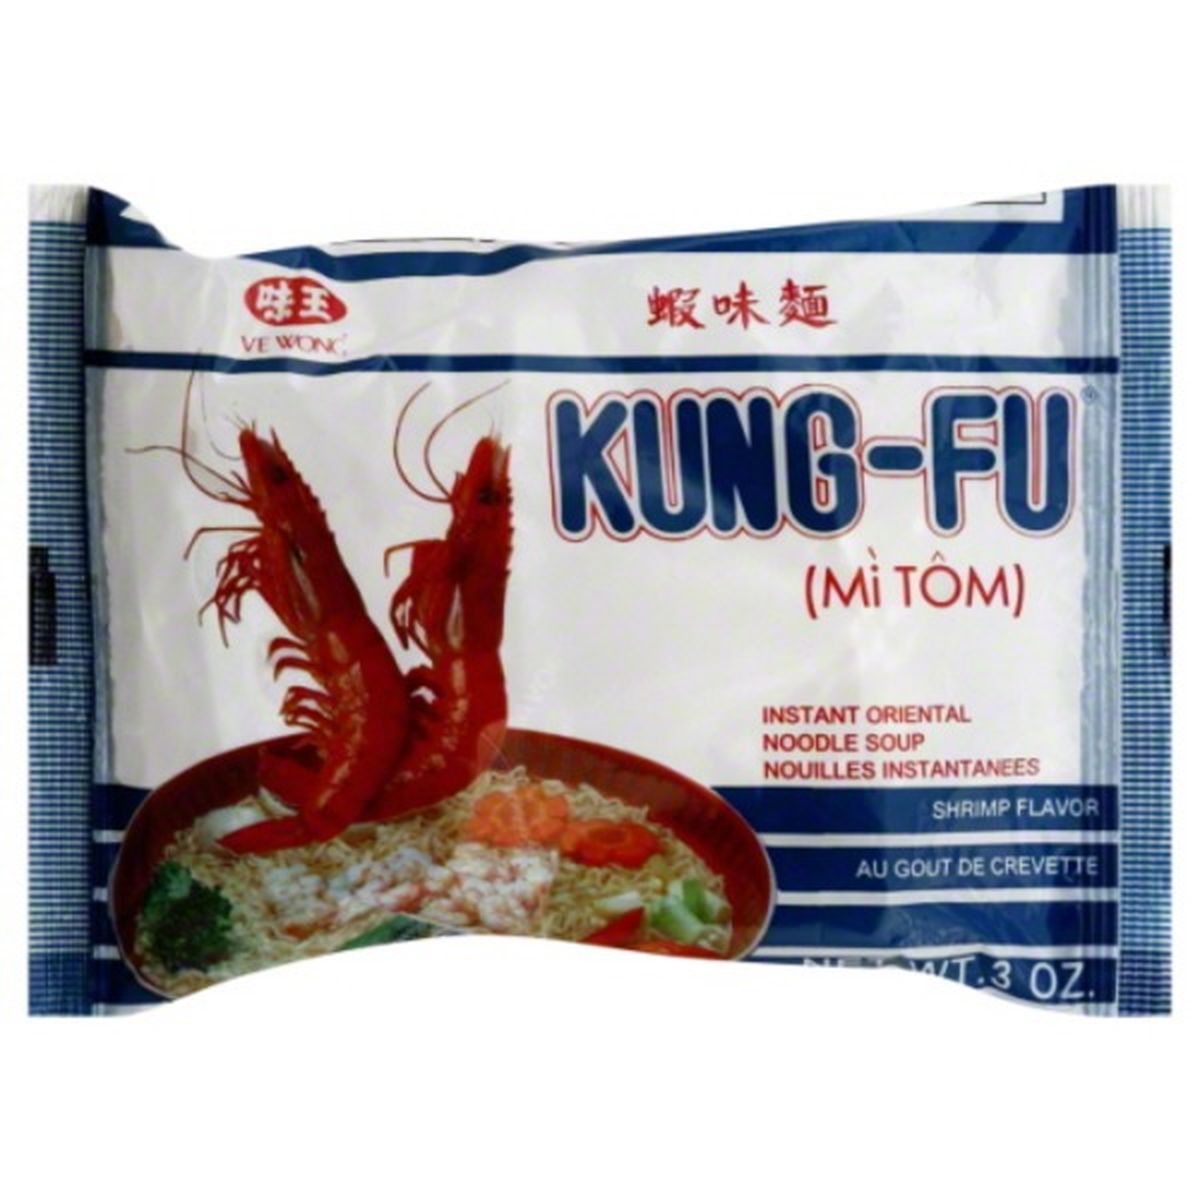 Calories in Kung-Fu Soup, Instant, Oriental Noodle, Shrimp Flavor